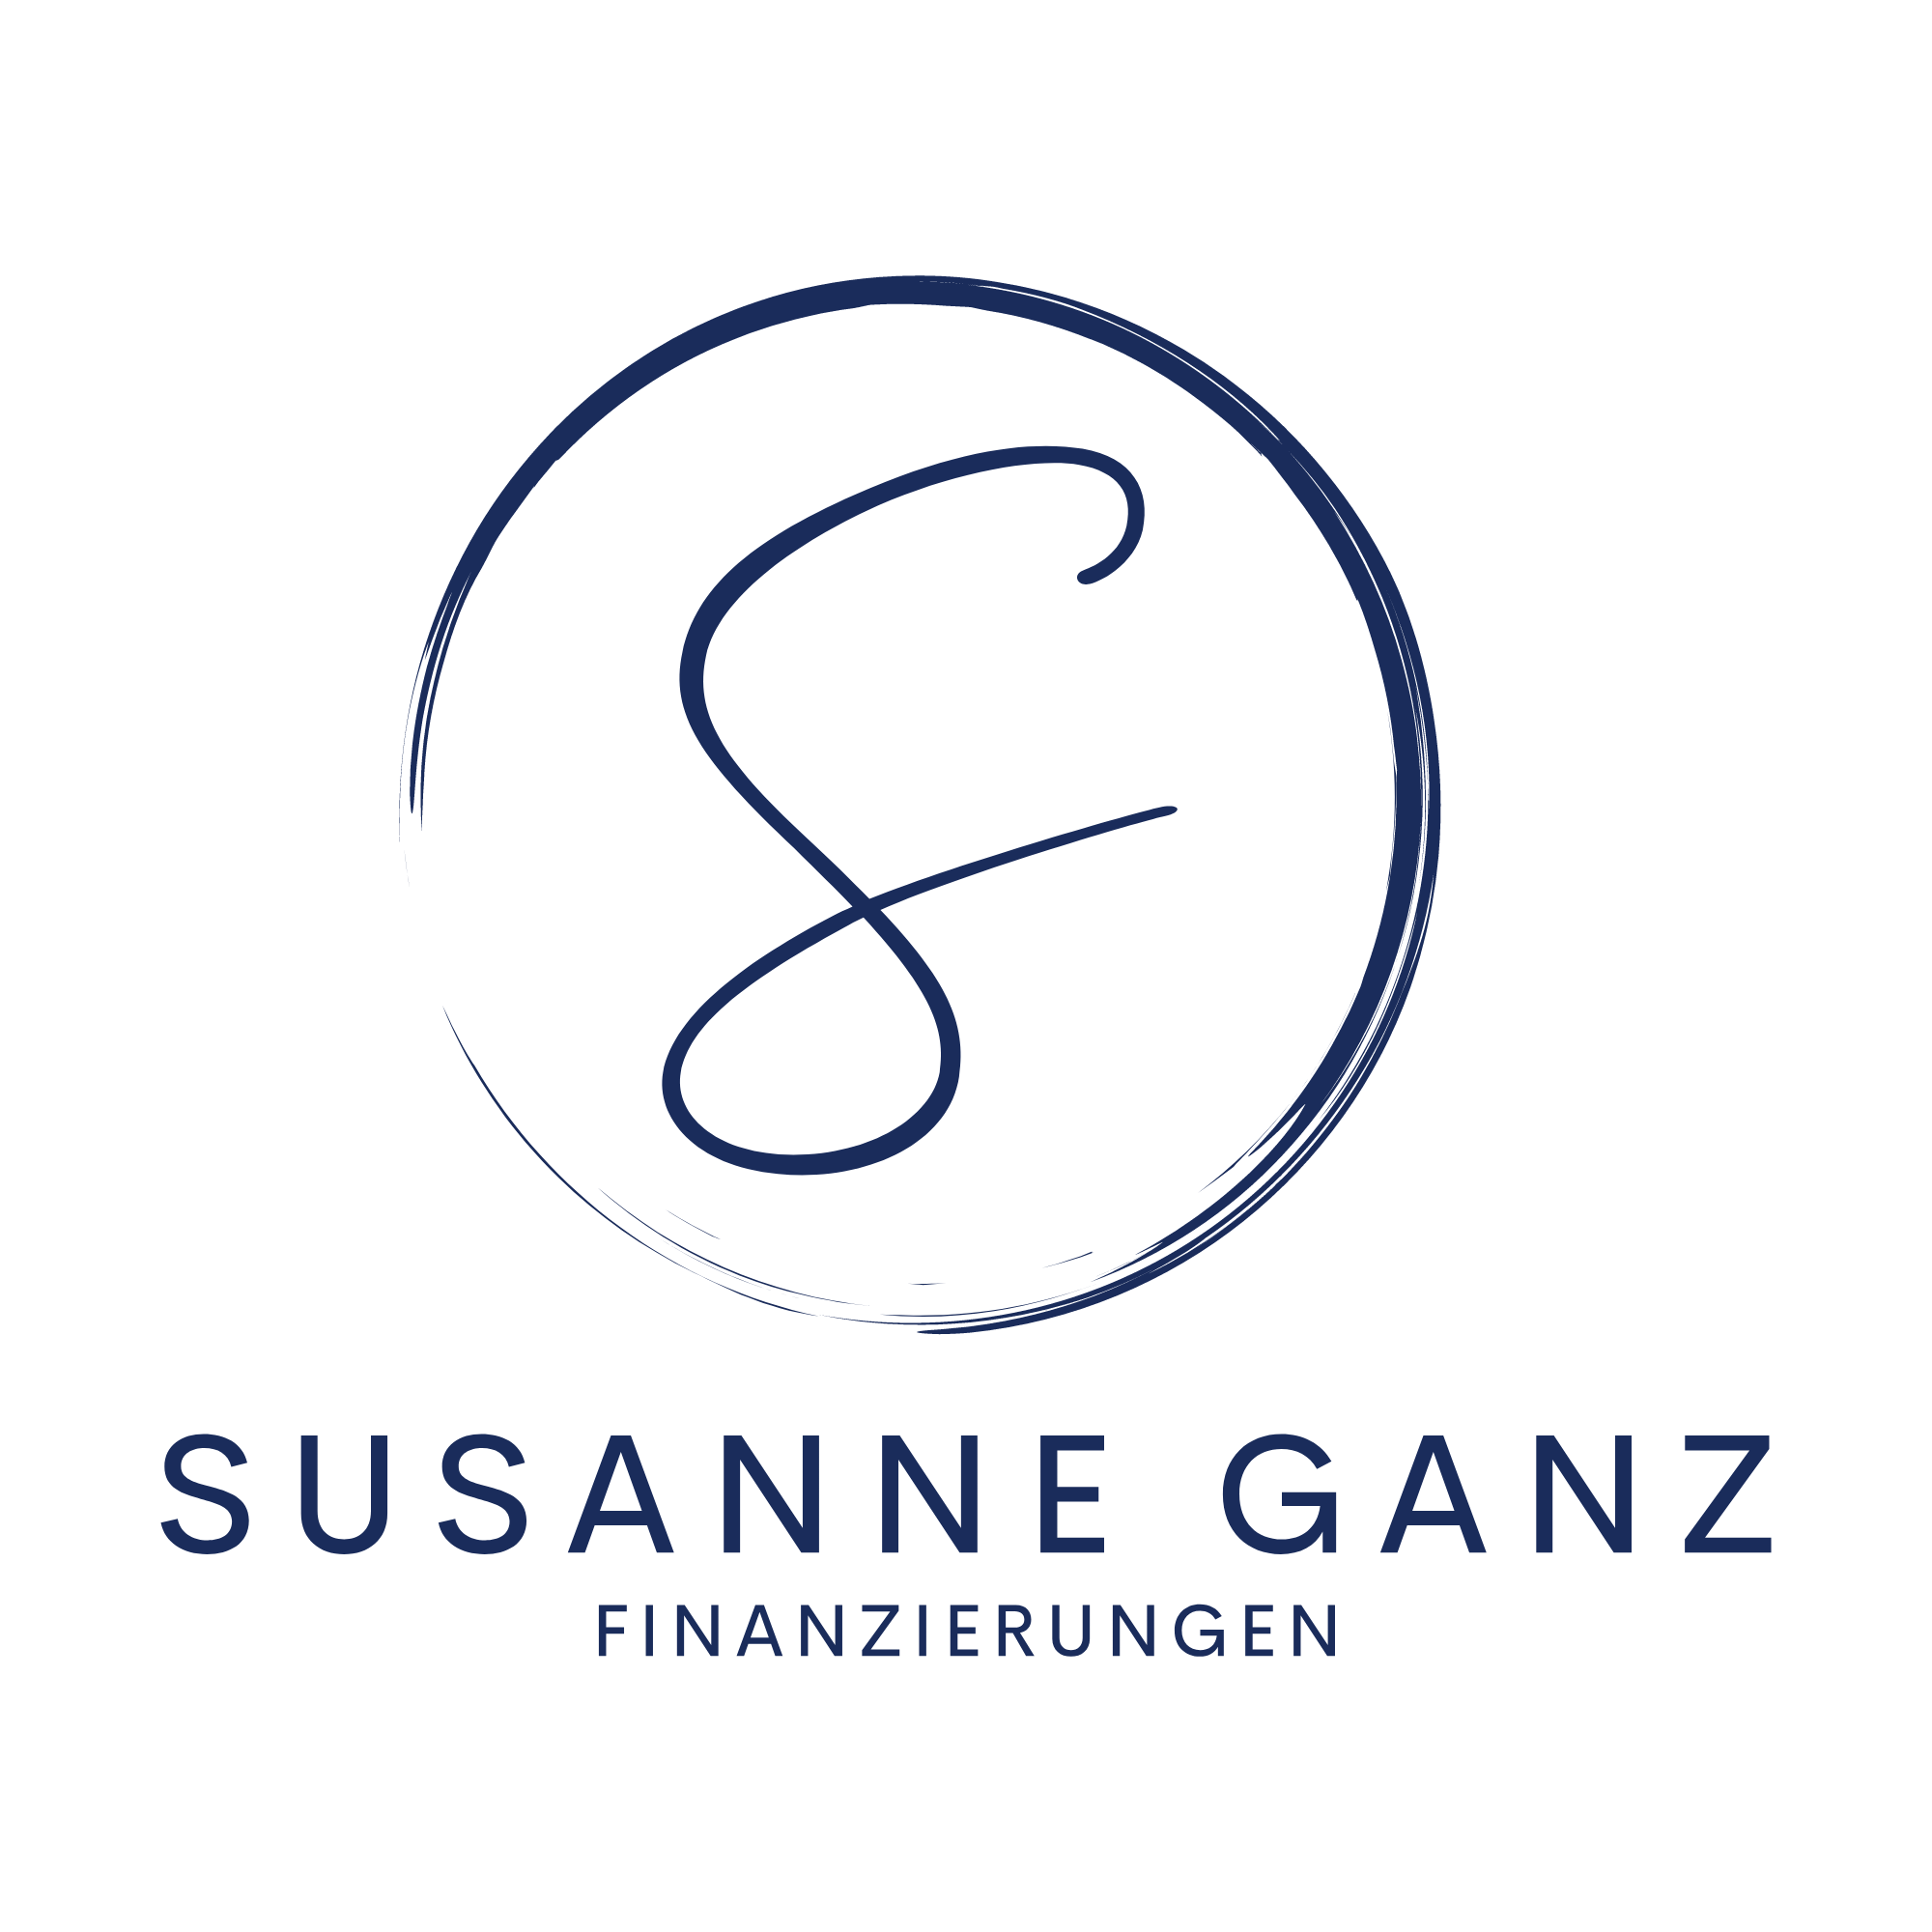 Susanne Ganz Finanzierungen Logo